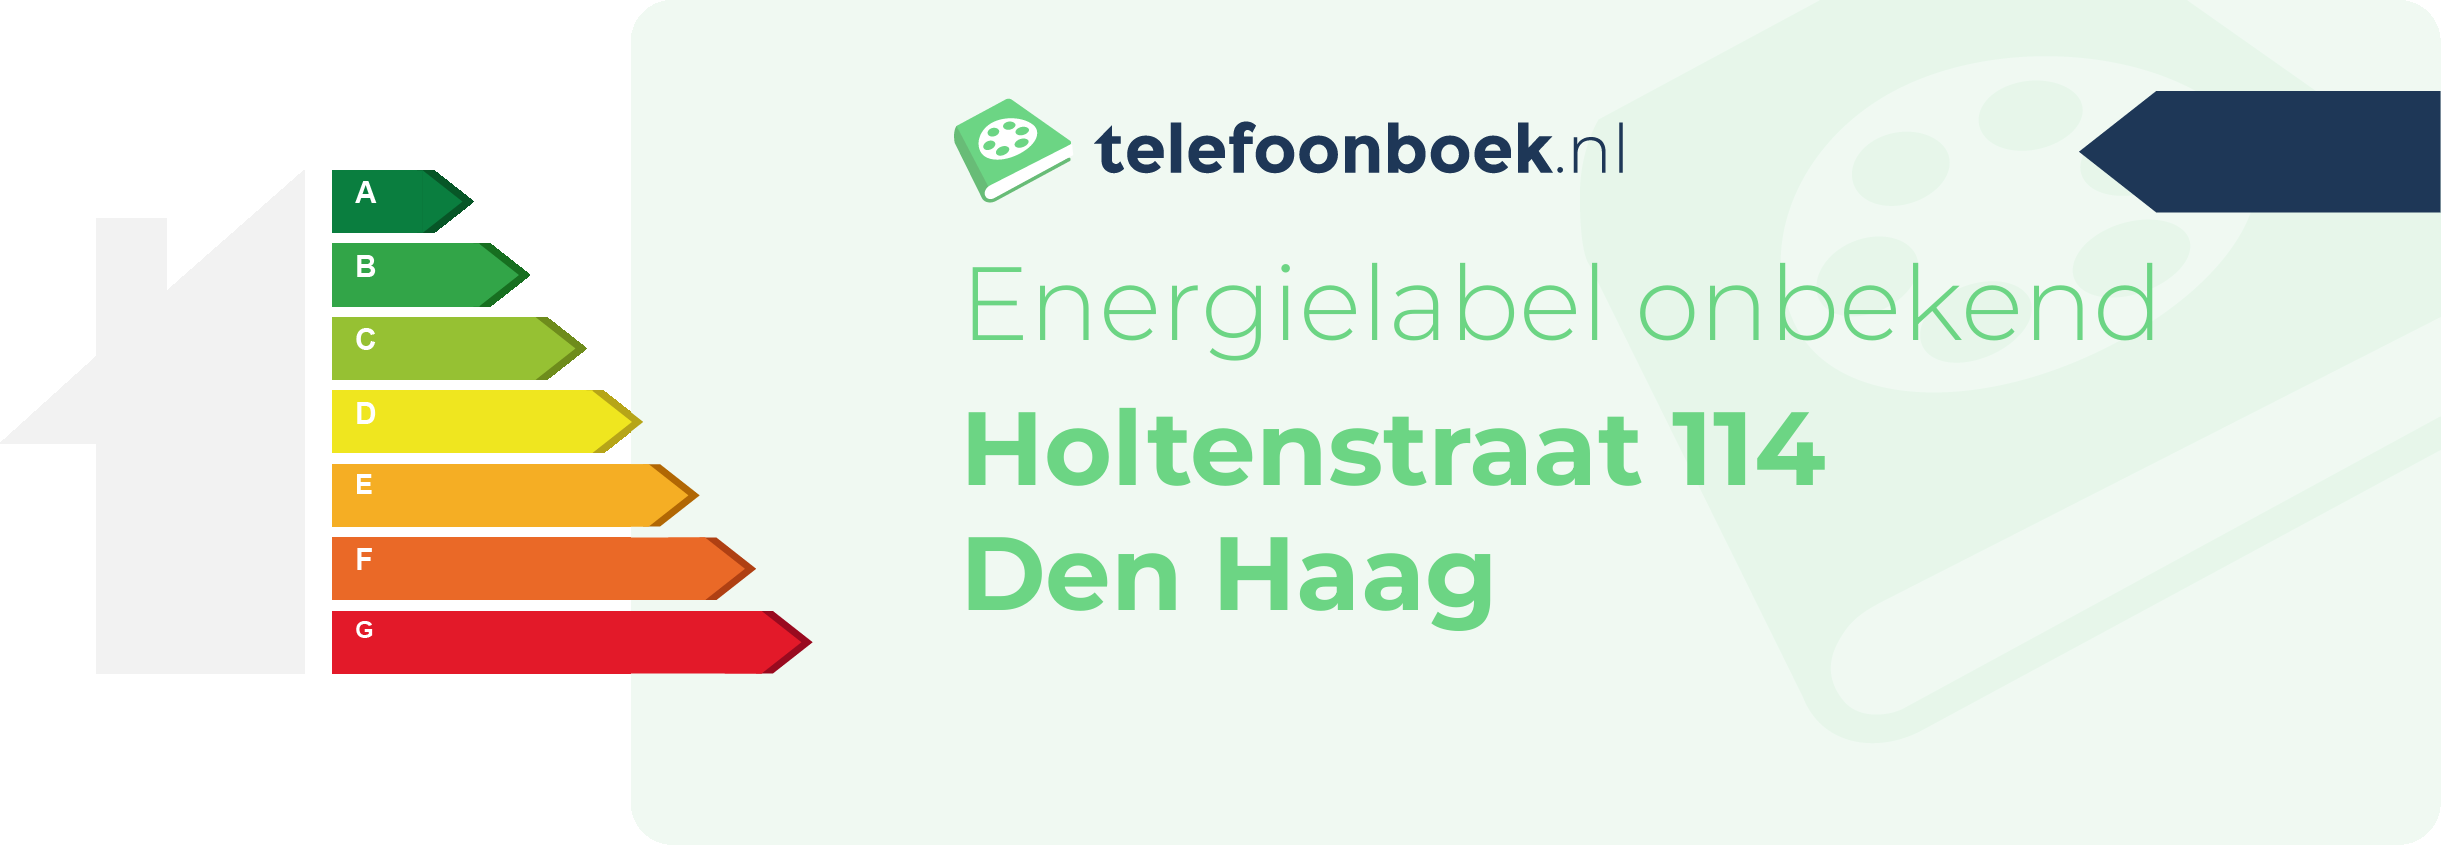 Energielabel Holtenstraat 114 Den Haag